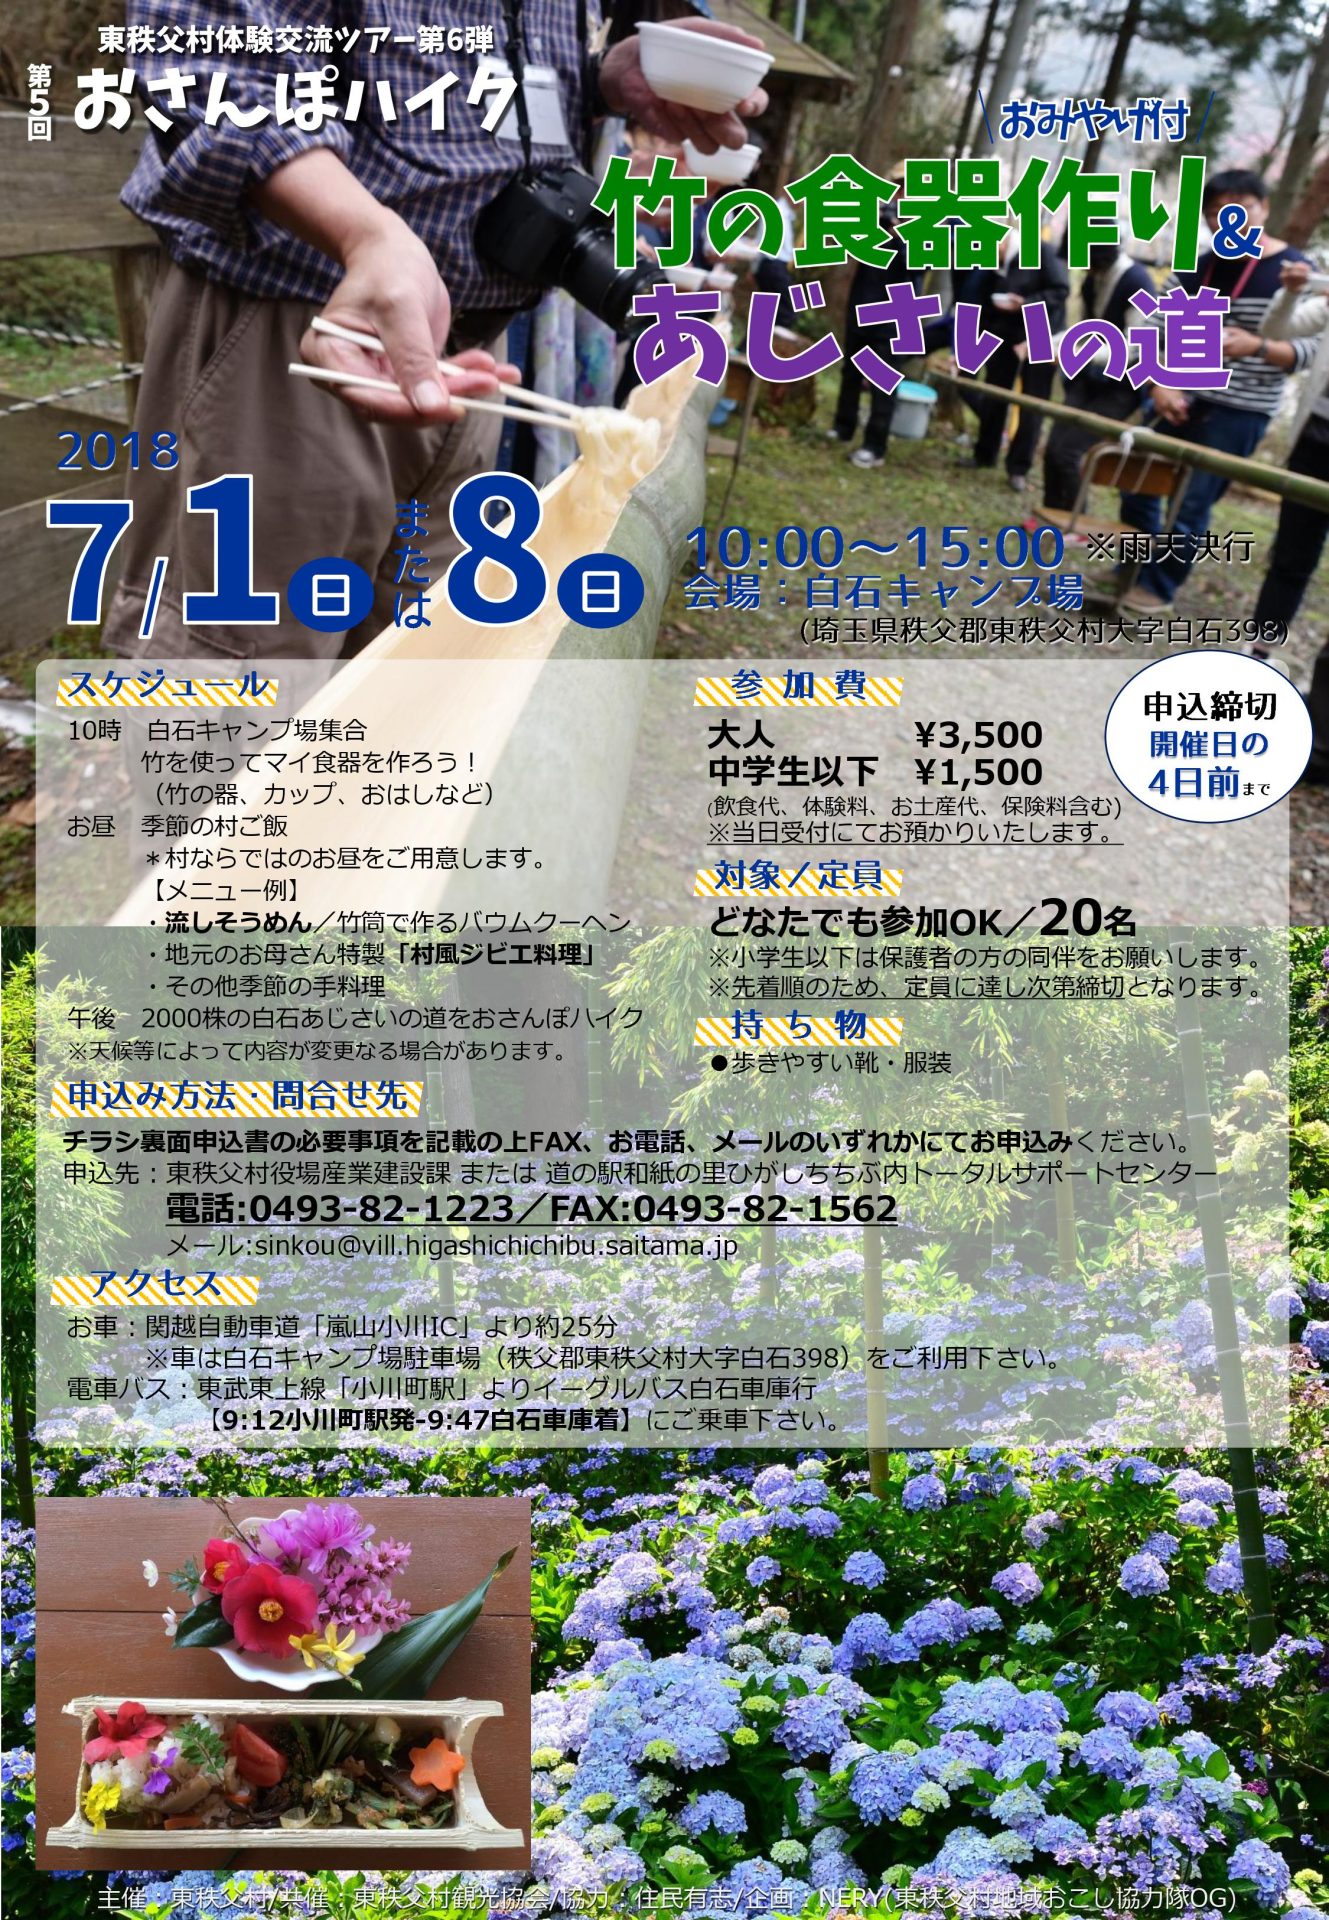 県内唯一の村・東秩父村で竹の食器作り＆あじさい散策ツアー | 移住関連イベント情報